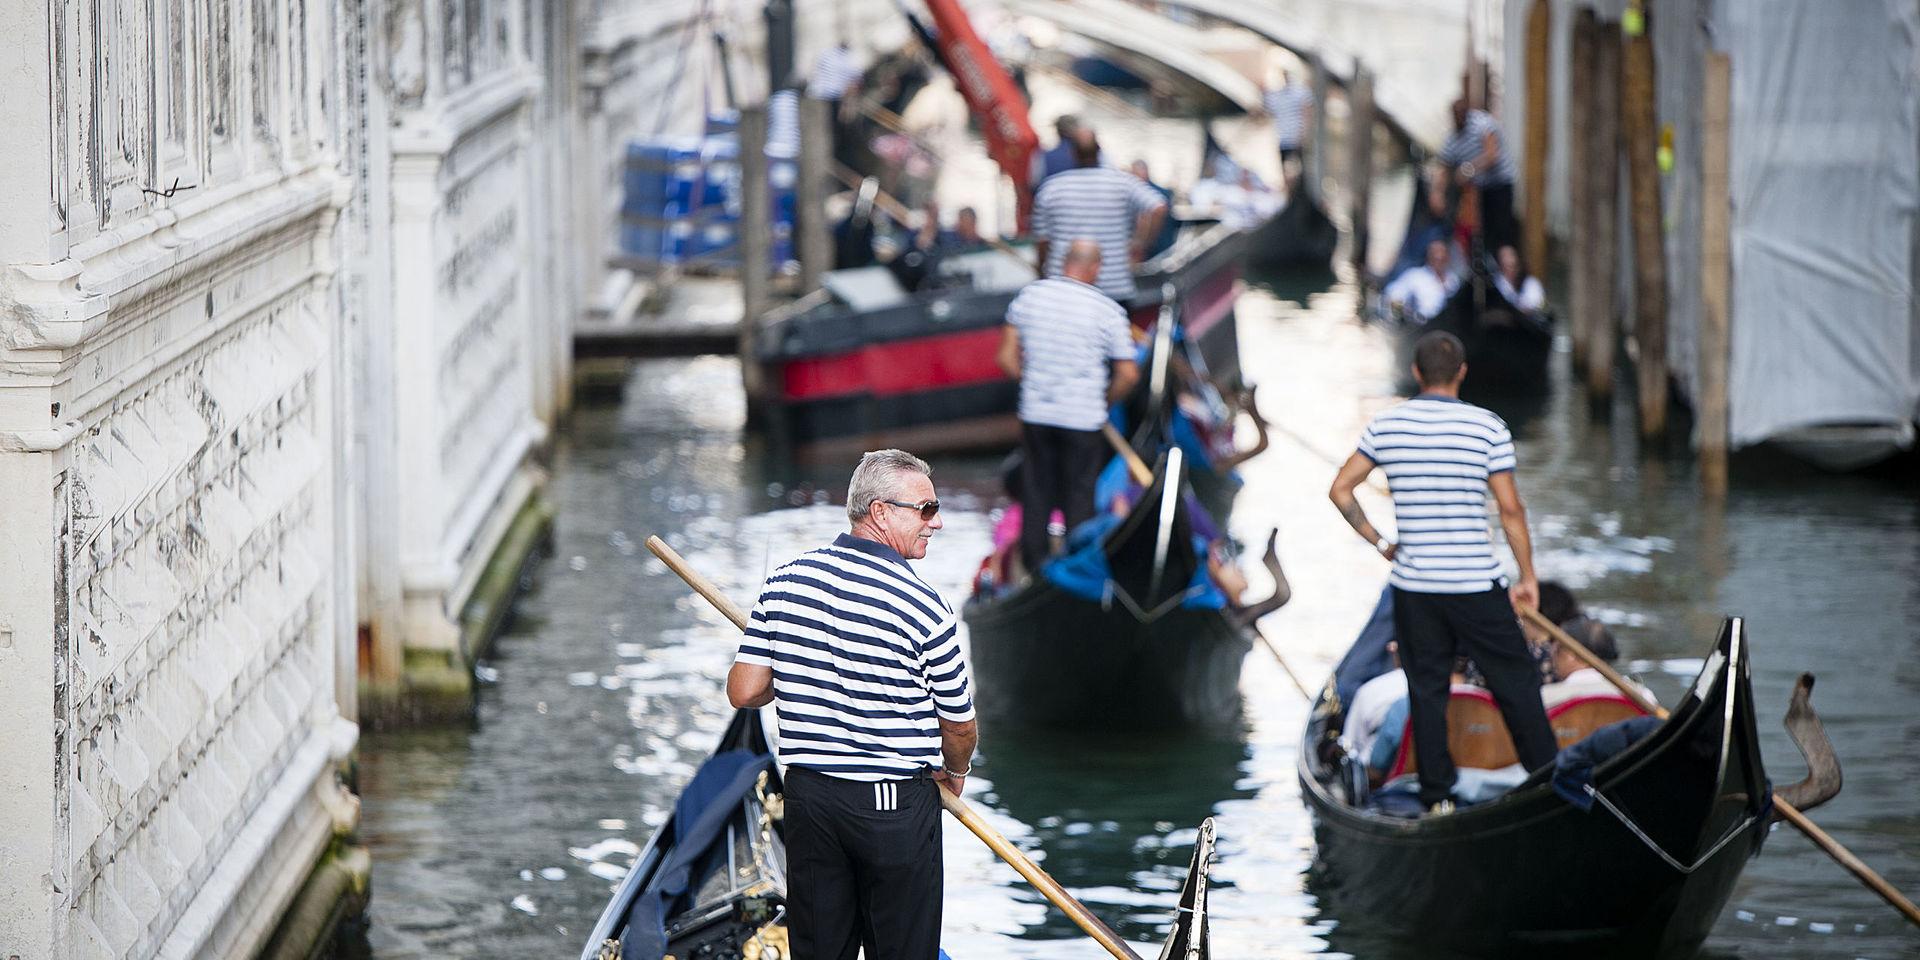 Trafikstockning. Kanalerna är Venedigs gator och transportleder. Gondolerna med turister får snällt lämna plats när en lastbåt måste fram.